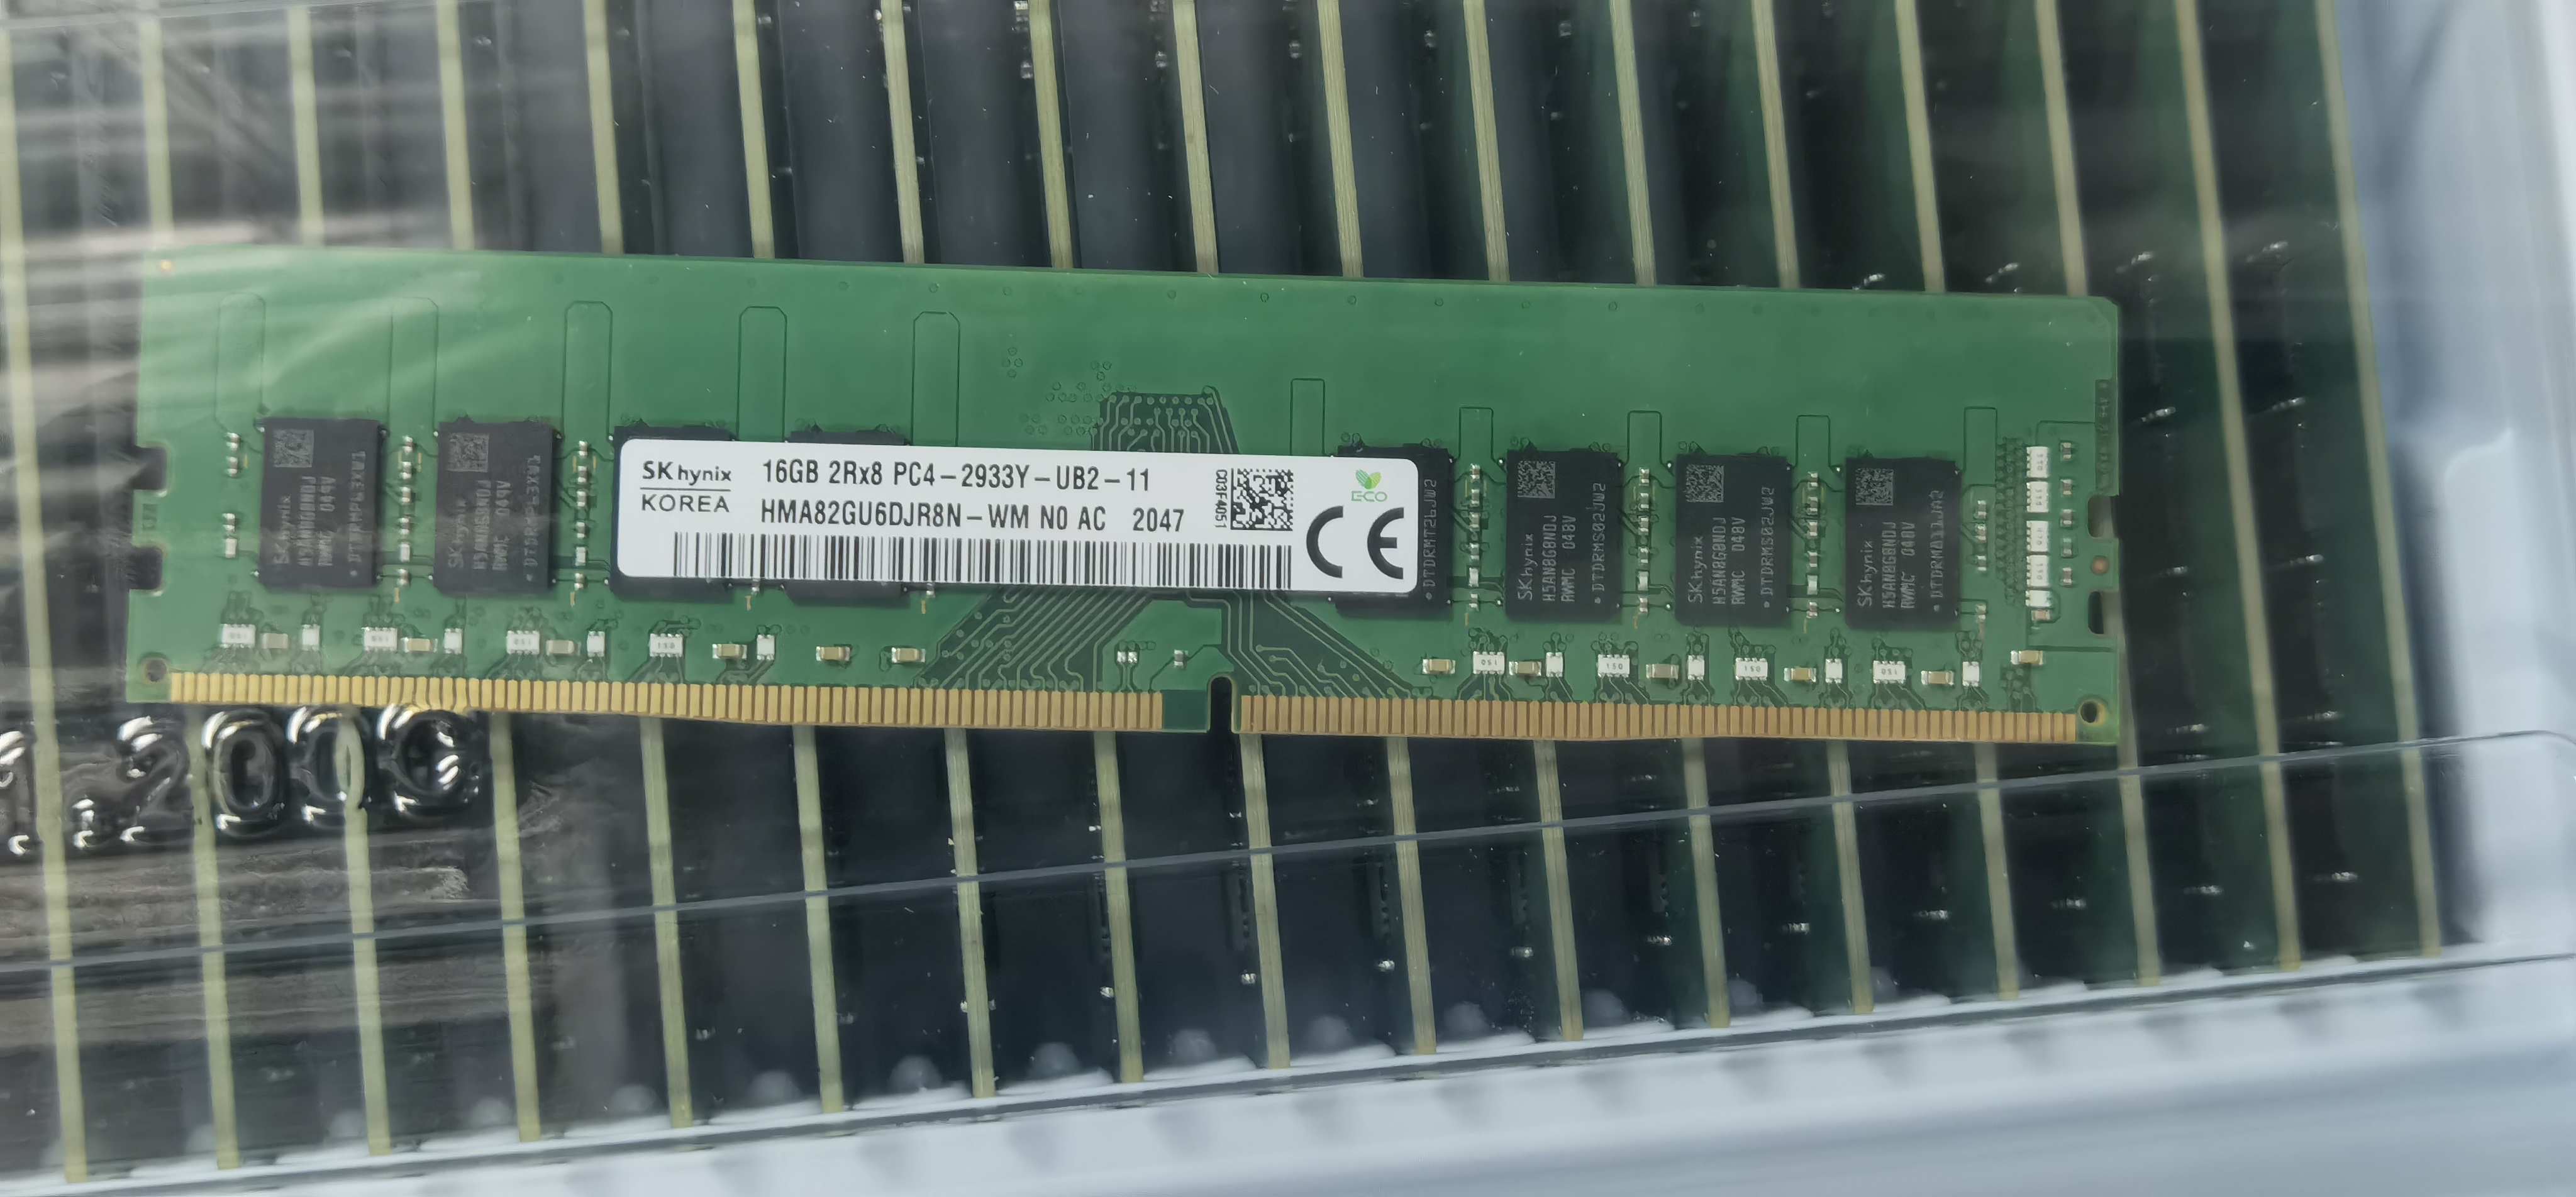 SK Hynix 16GB 2RX8 PC4-2933Y-UB2-11 Desktop Memory HMA82GU6DJR8N-WM-Taobao